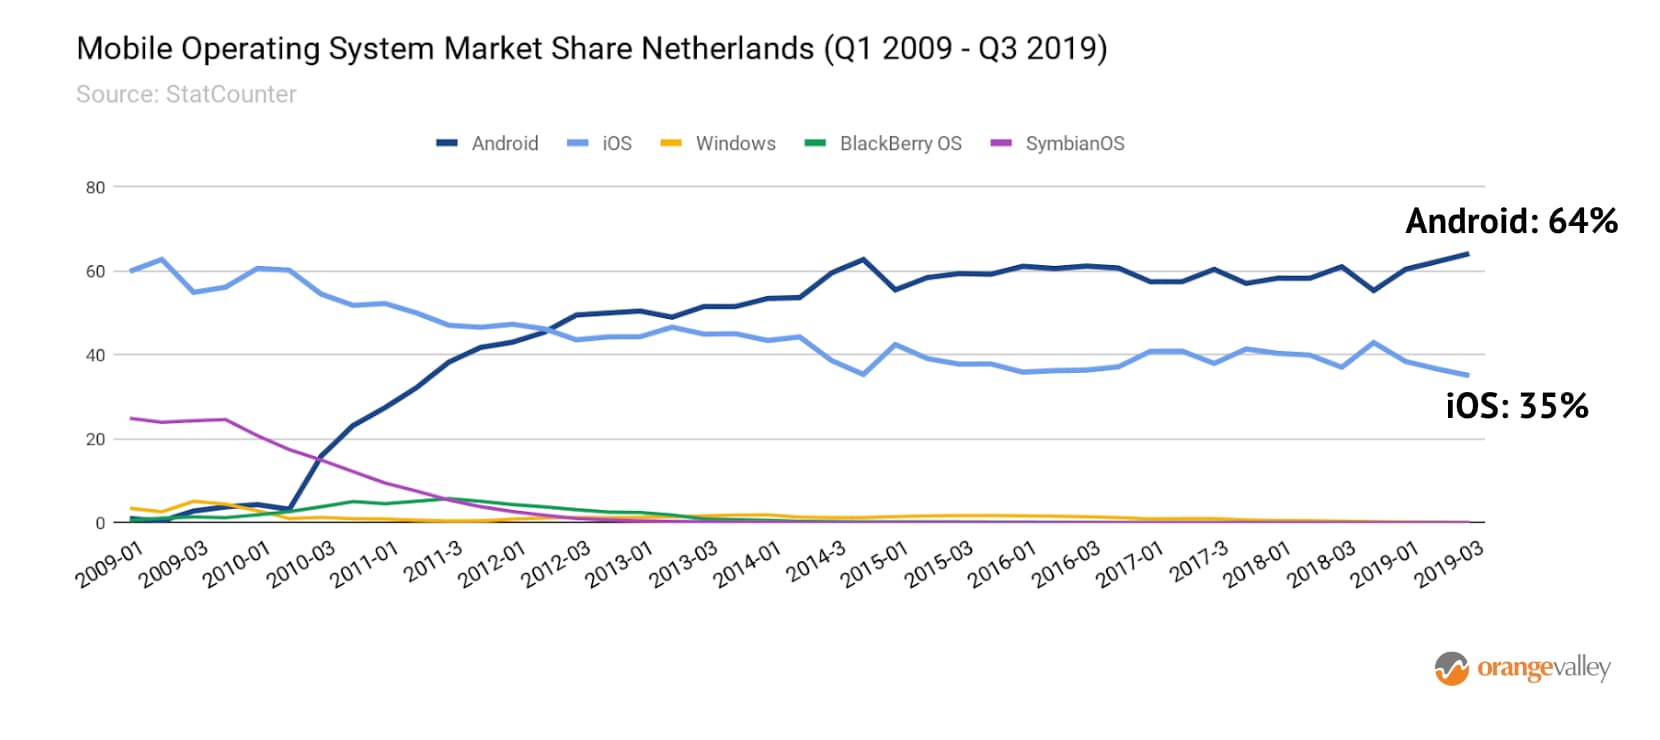 marktaandeel-android-nl